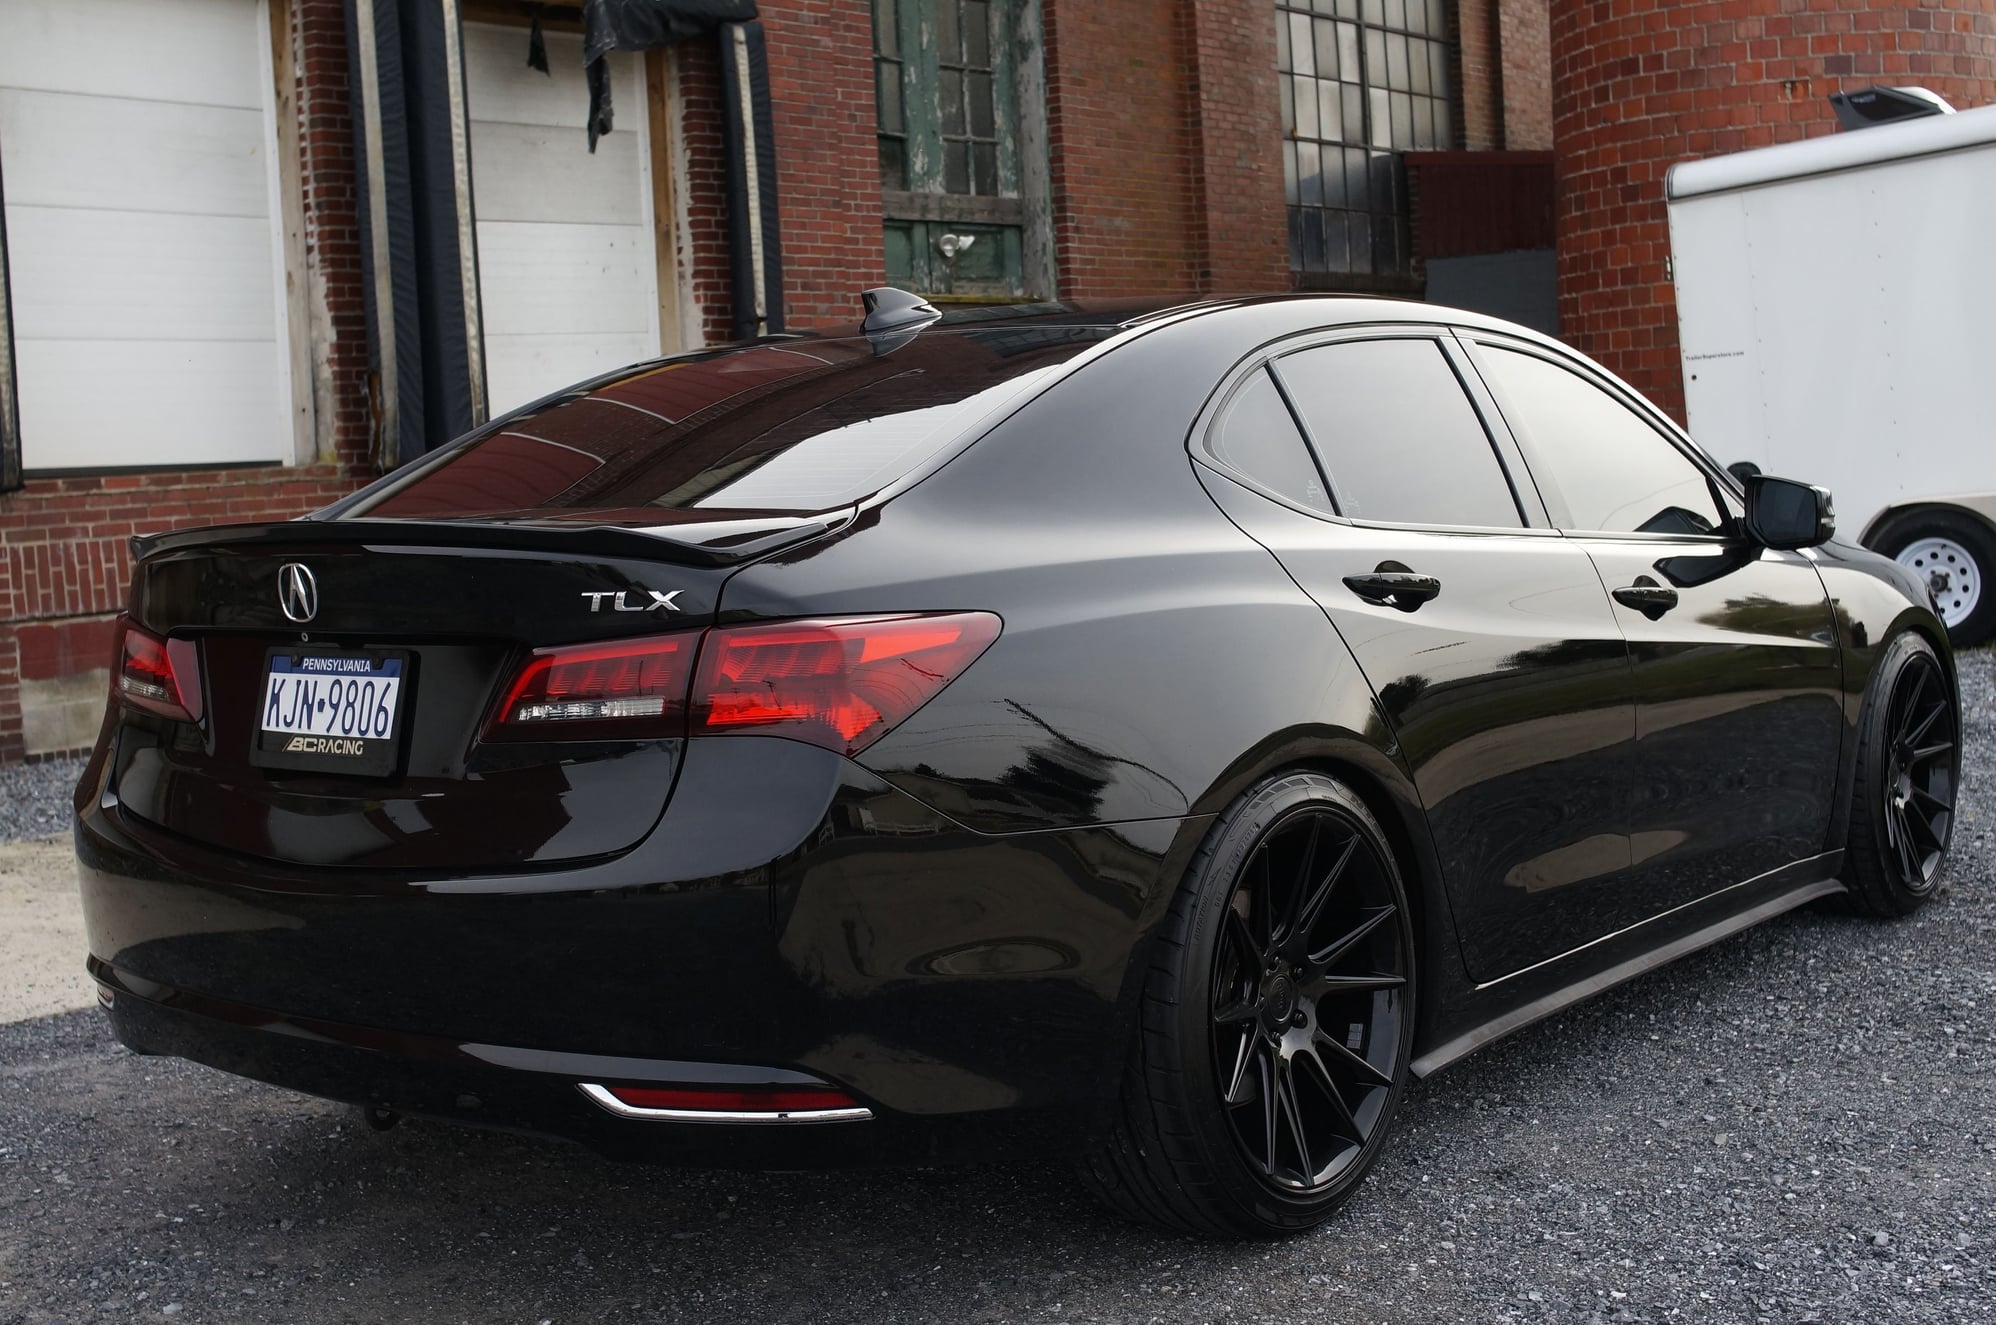 2015 Acura TLX - SOLD: 2015 acura TLX v6 tech (Rebuilt Title) - Used - VIN 19UUB2F58FA010502 - 29,320 Miles - 6 cyl - 2WD - Automatic - Sedan - Black - Lebanon, PA 17073, United States